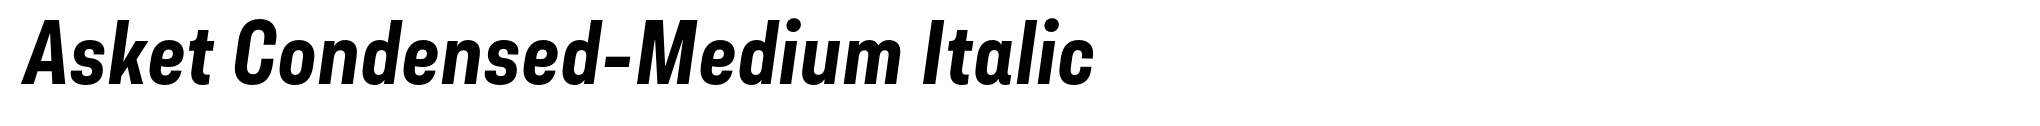 Asket Condensed-Medium Italic image